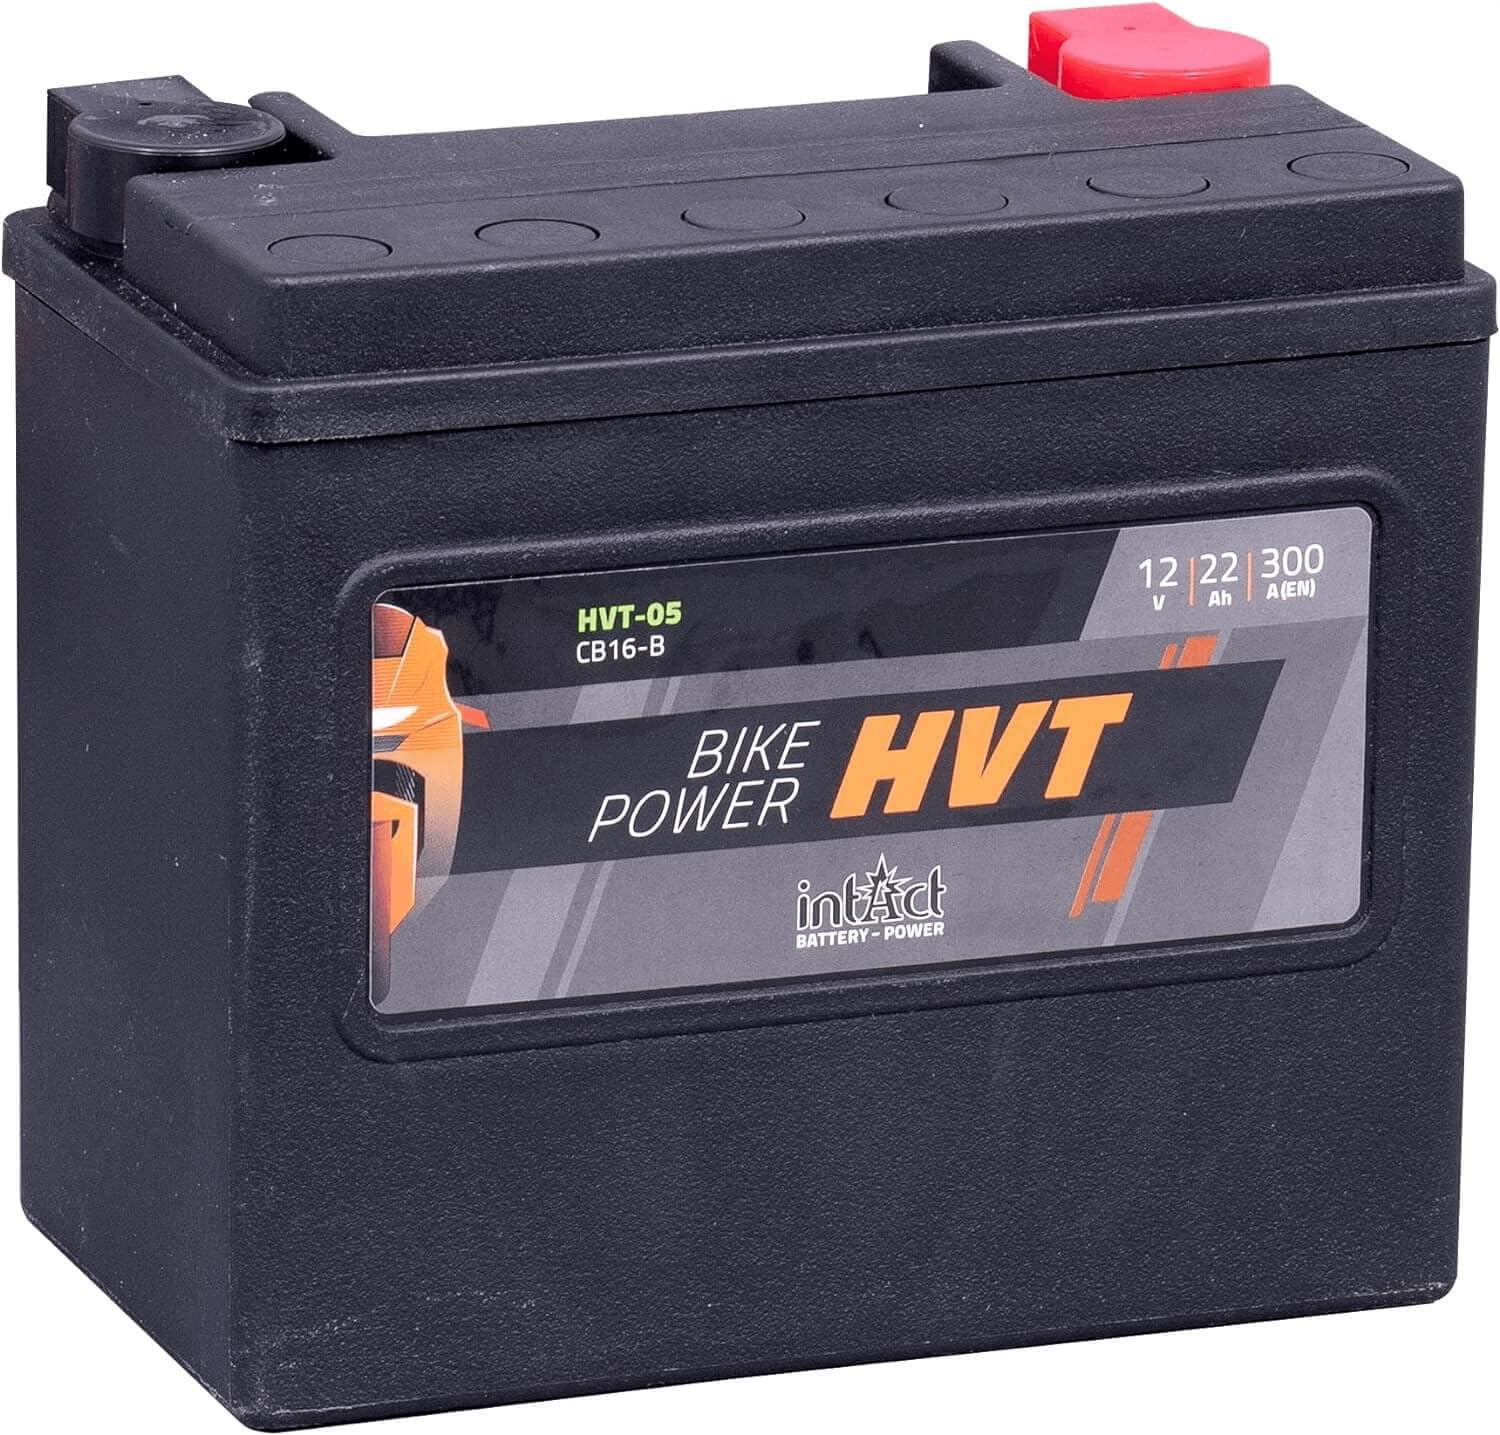 intAct - HVT MOTORRADBATTERIE | Batterie für Roller, Motorrad, Rasentraktor. Wartungsfreier & auslaufsicherer Akku. | HVT-05, CB16-B, 65991-82B, 12V Batterie, 22 AH (c20), 300 A (EN) | Maße: 176x101x156mm von Intact